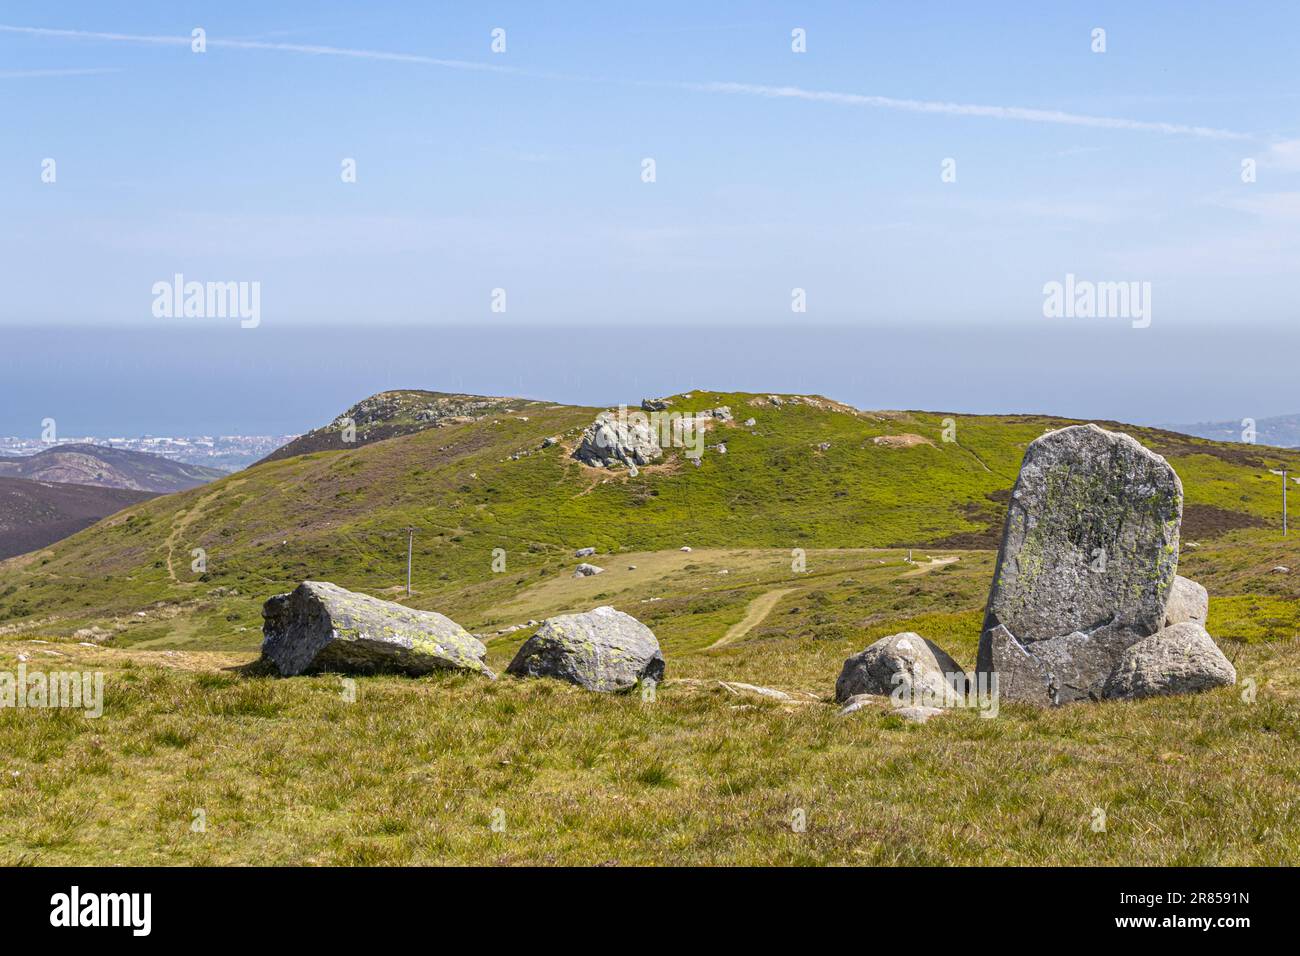 Le cercle des Druides, ou Meini Hirion en gallois, au-dessus du village de Penmaenmawr, Gwynedd, pays de Galles, Royaume-Uni. Banque D'Images